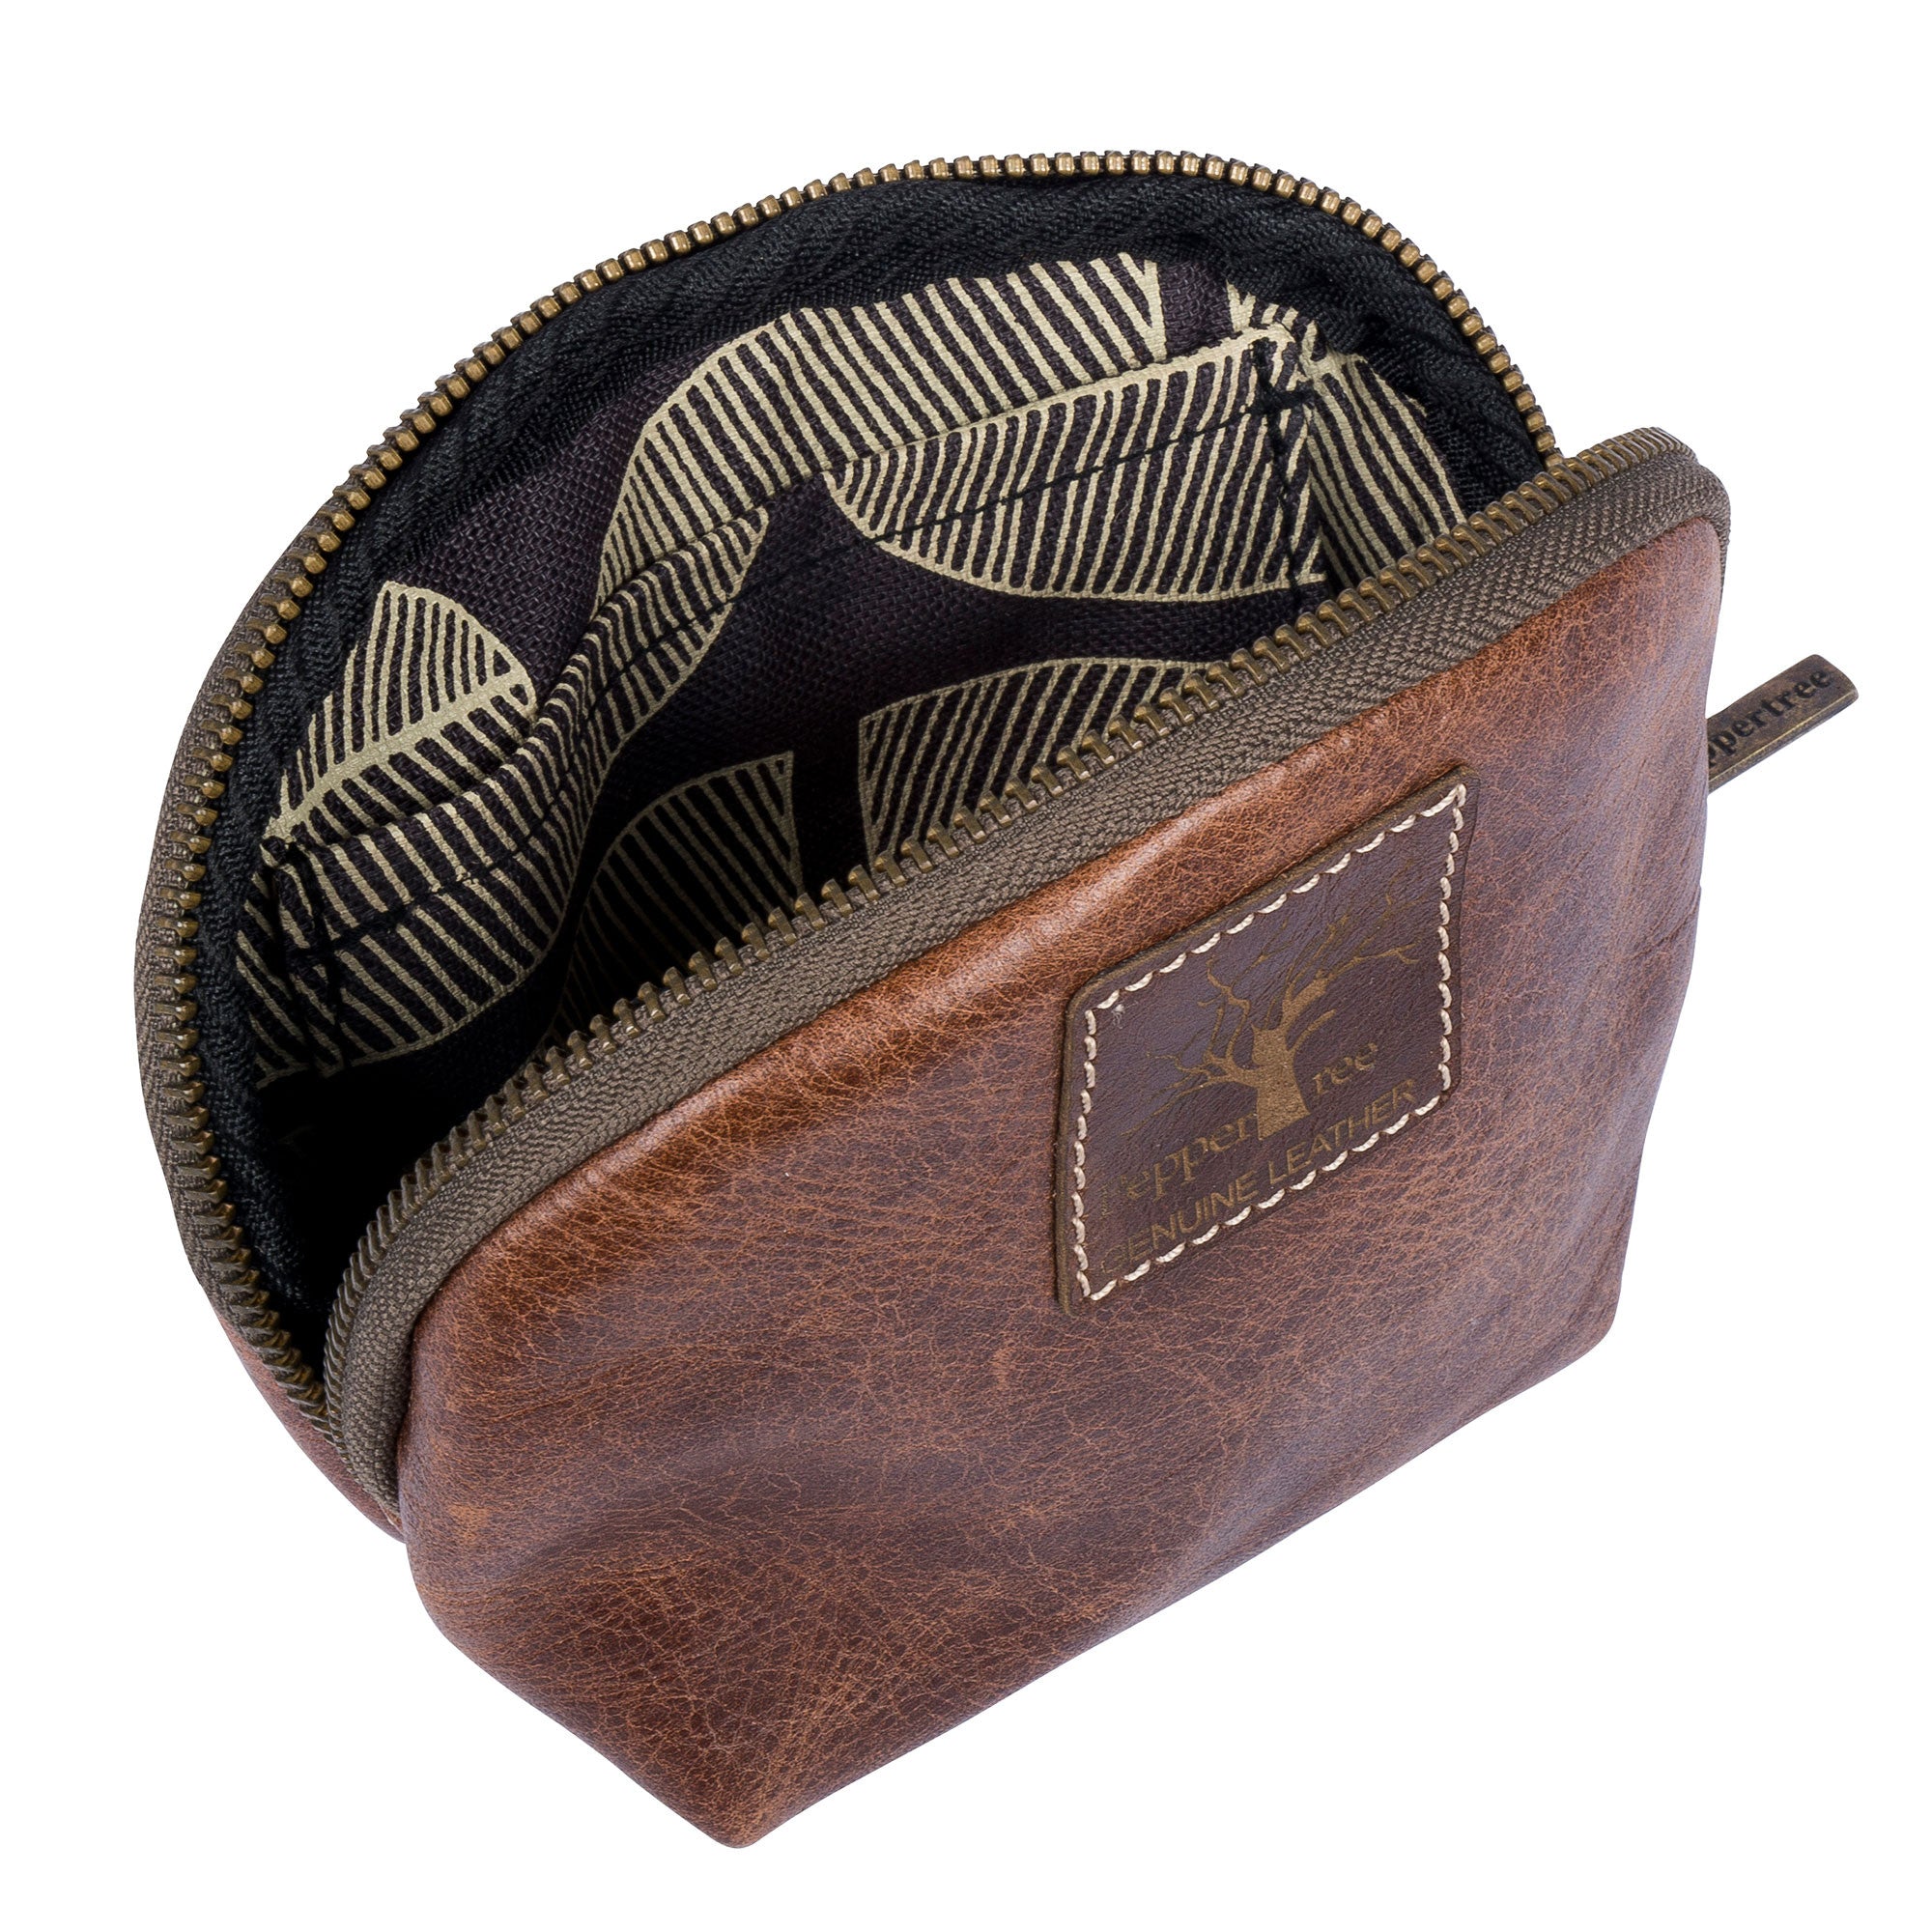 Men's leather pouch purse